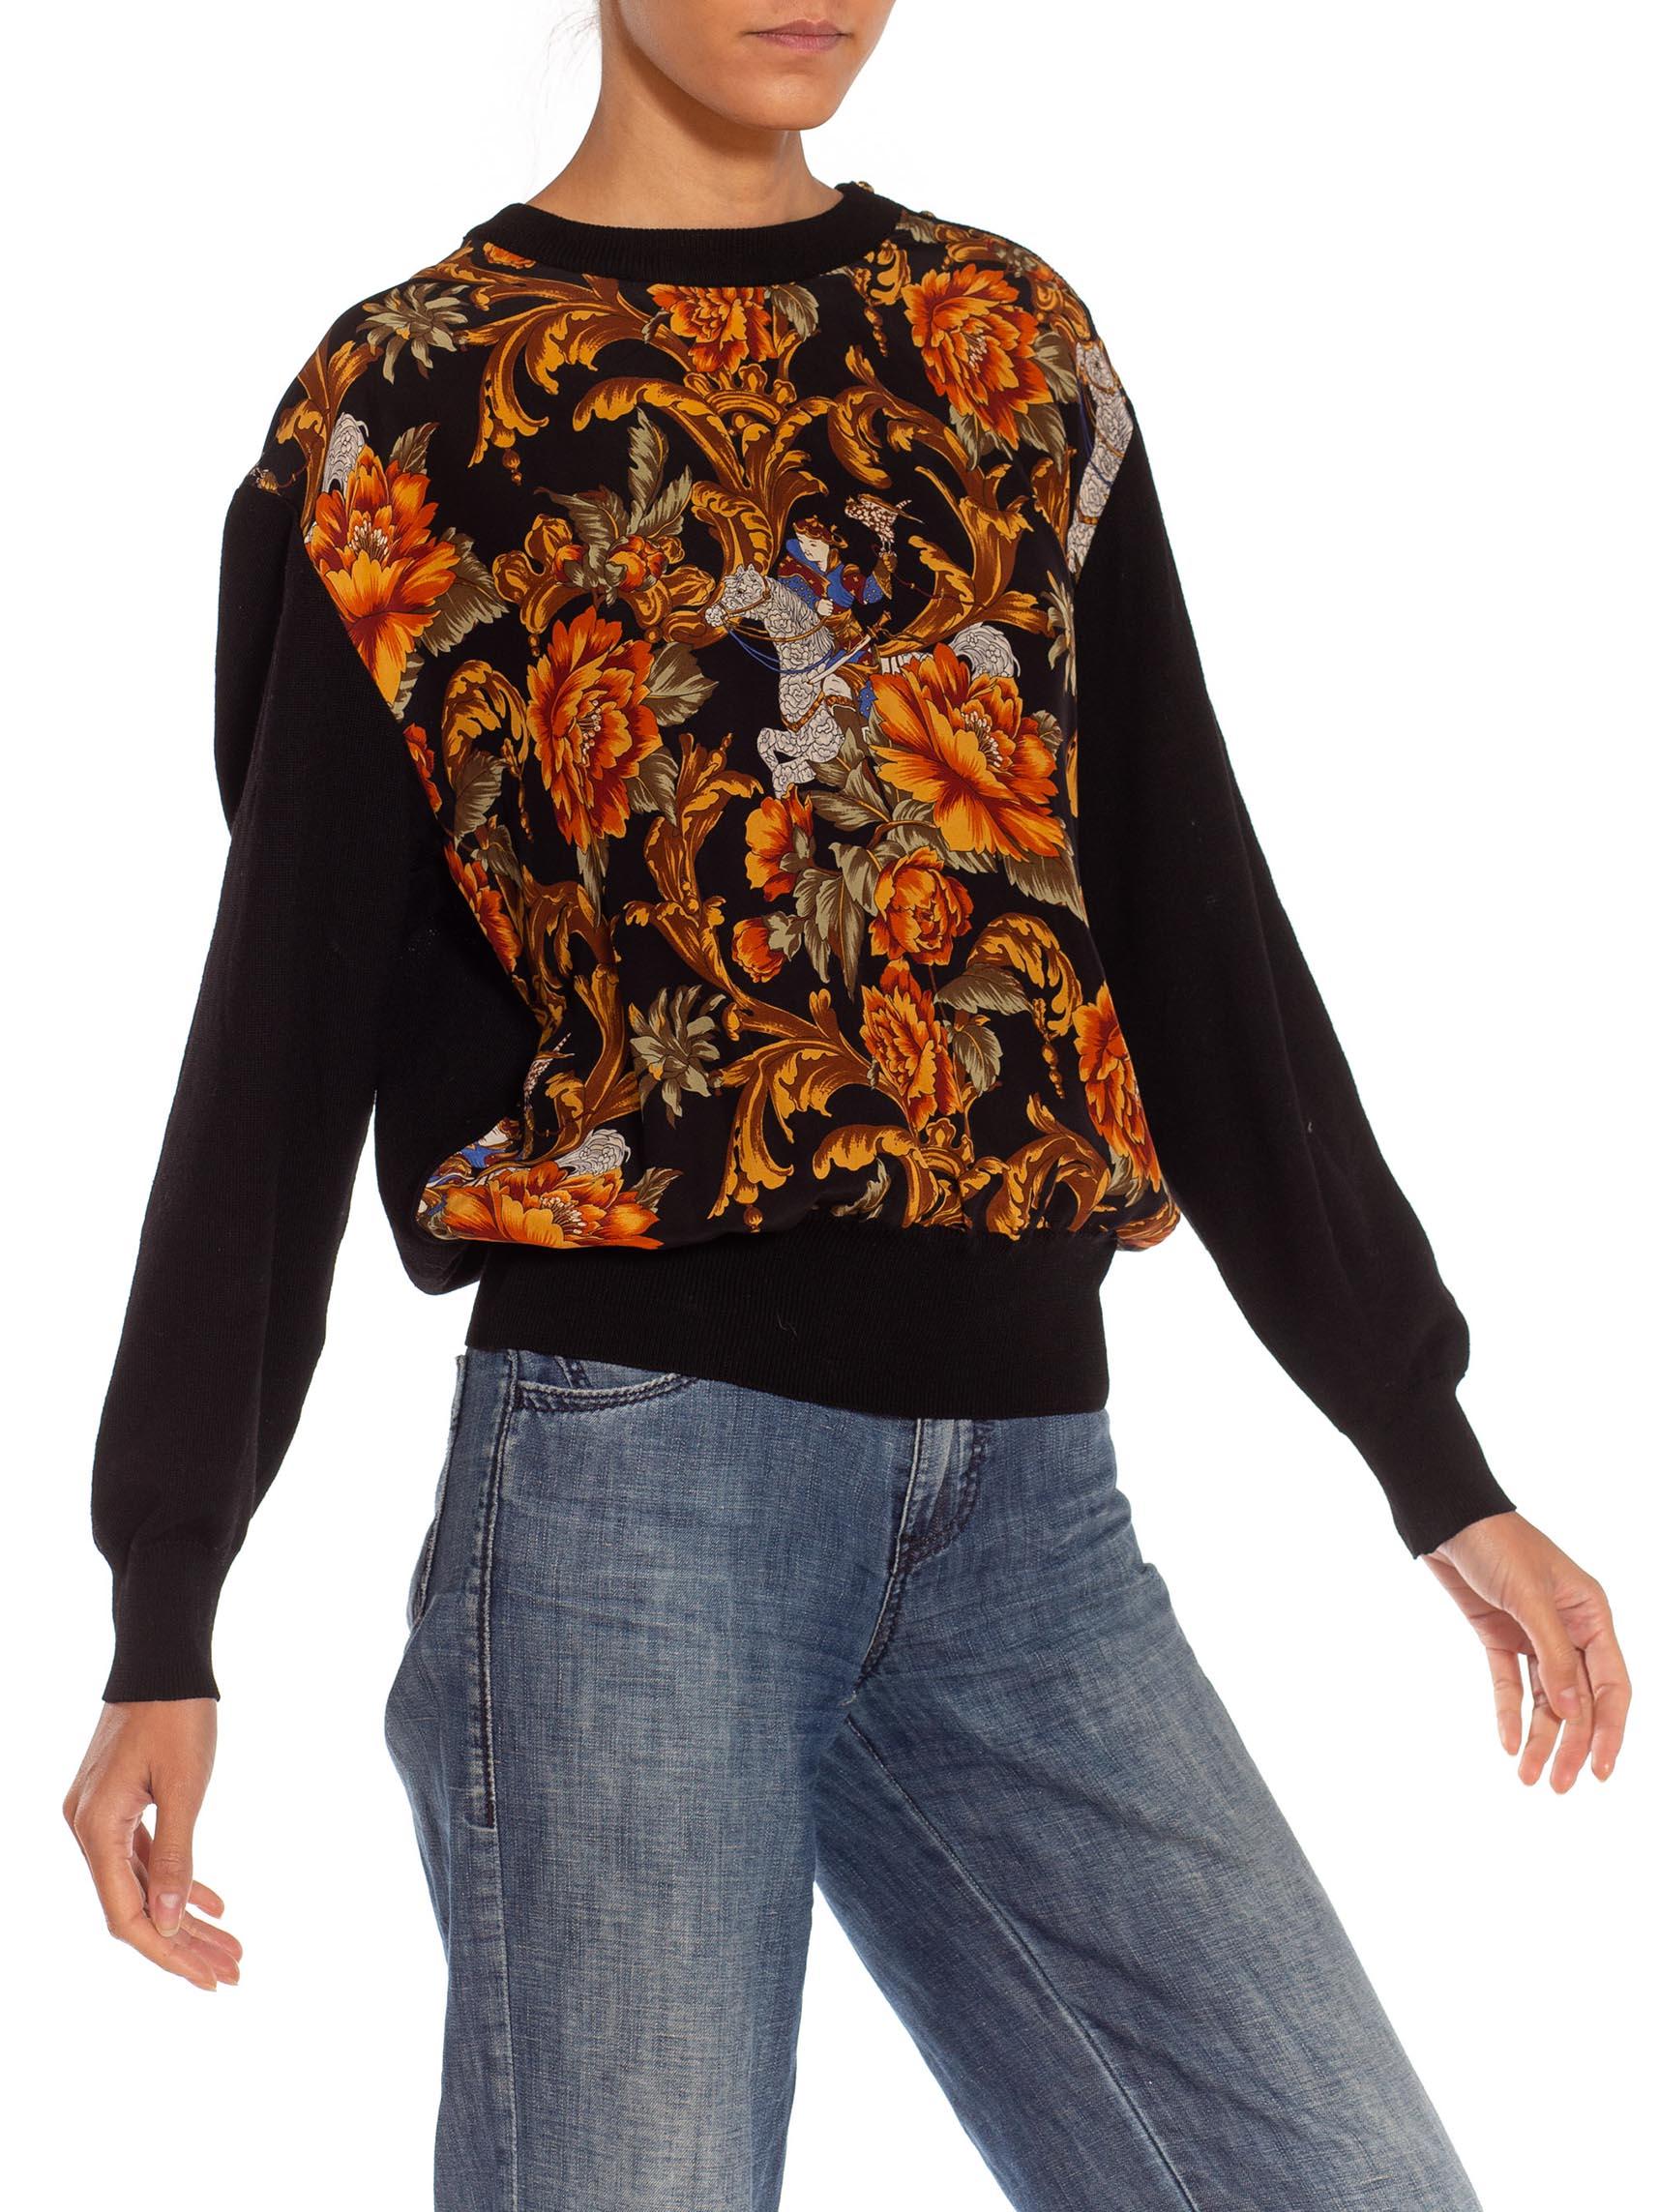 1990S SALVATORE FERRAGAMO Black & Gold Silk Knit Baroque Printed Sweater For Sale 3